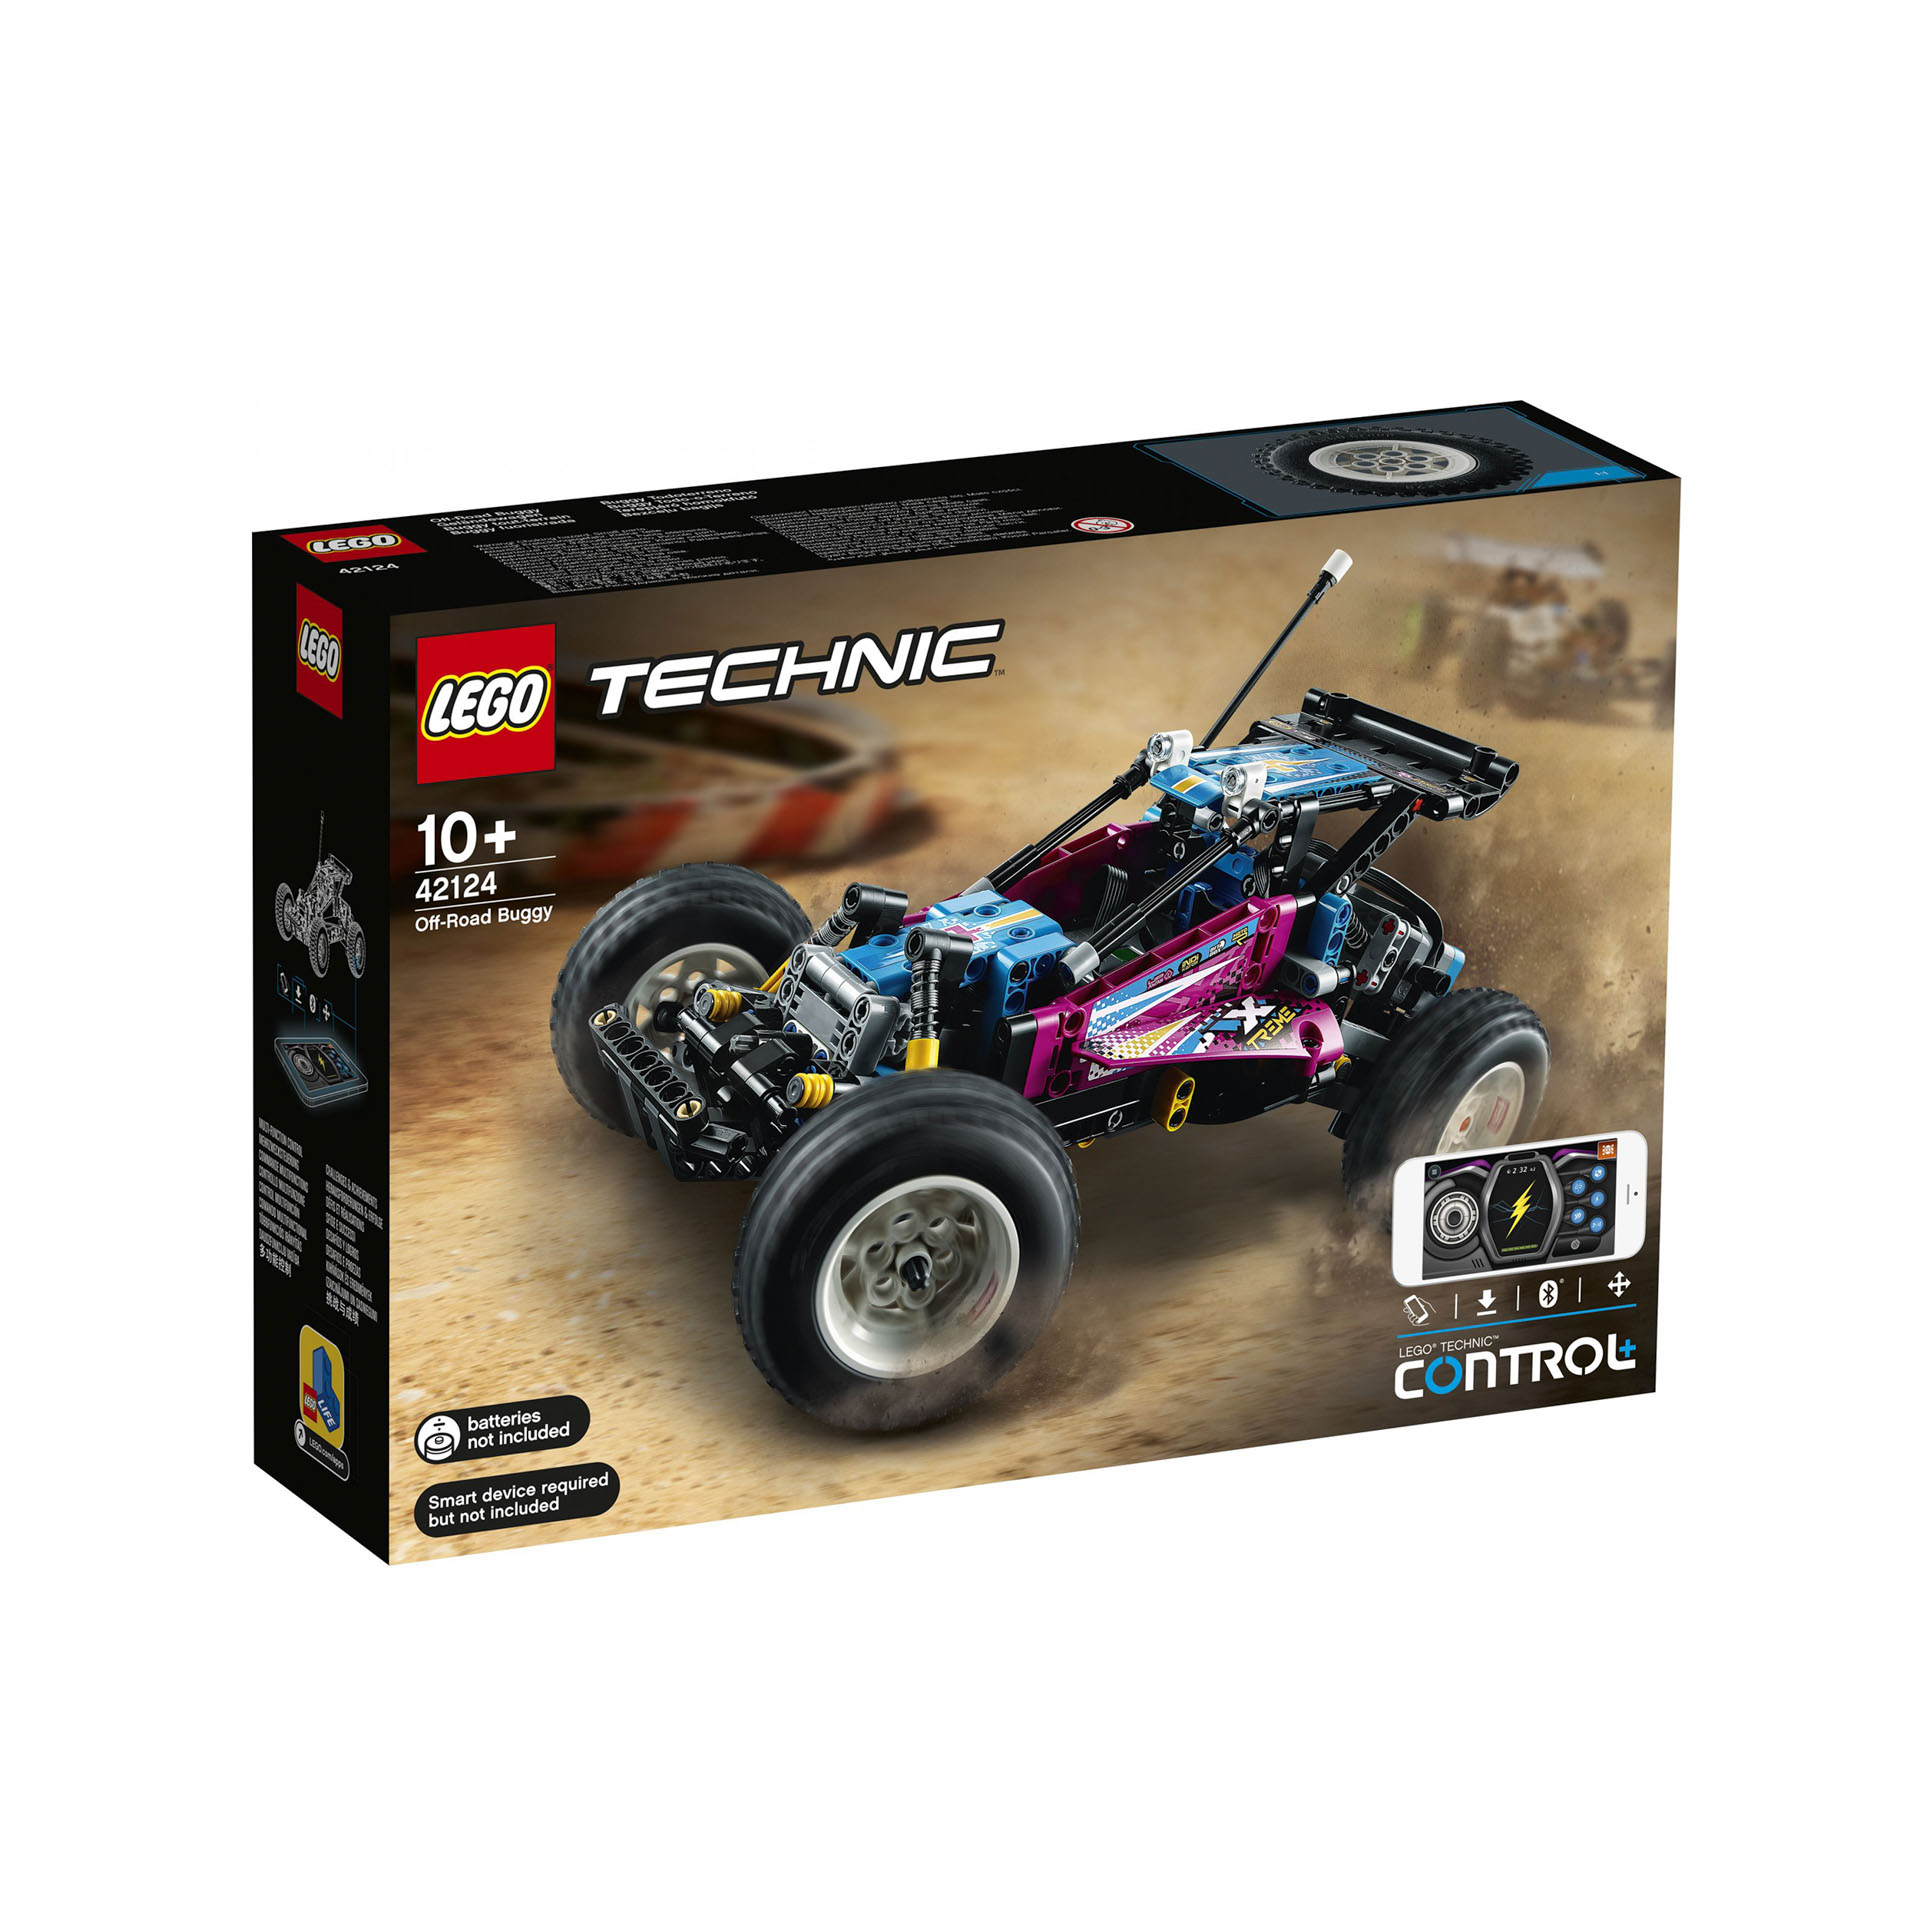 LEGO Technic Buggy Fuoristrada, Macchinina RC Retrò Telecomandata, Controllo Via 42124, , large